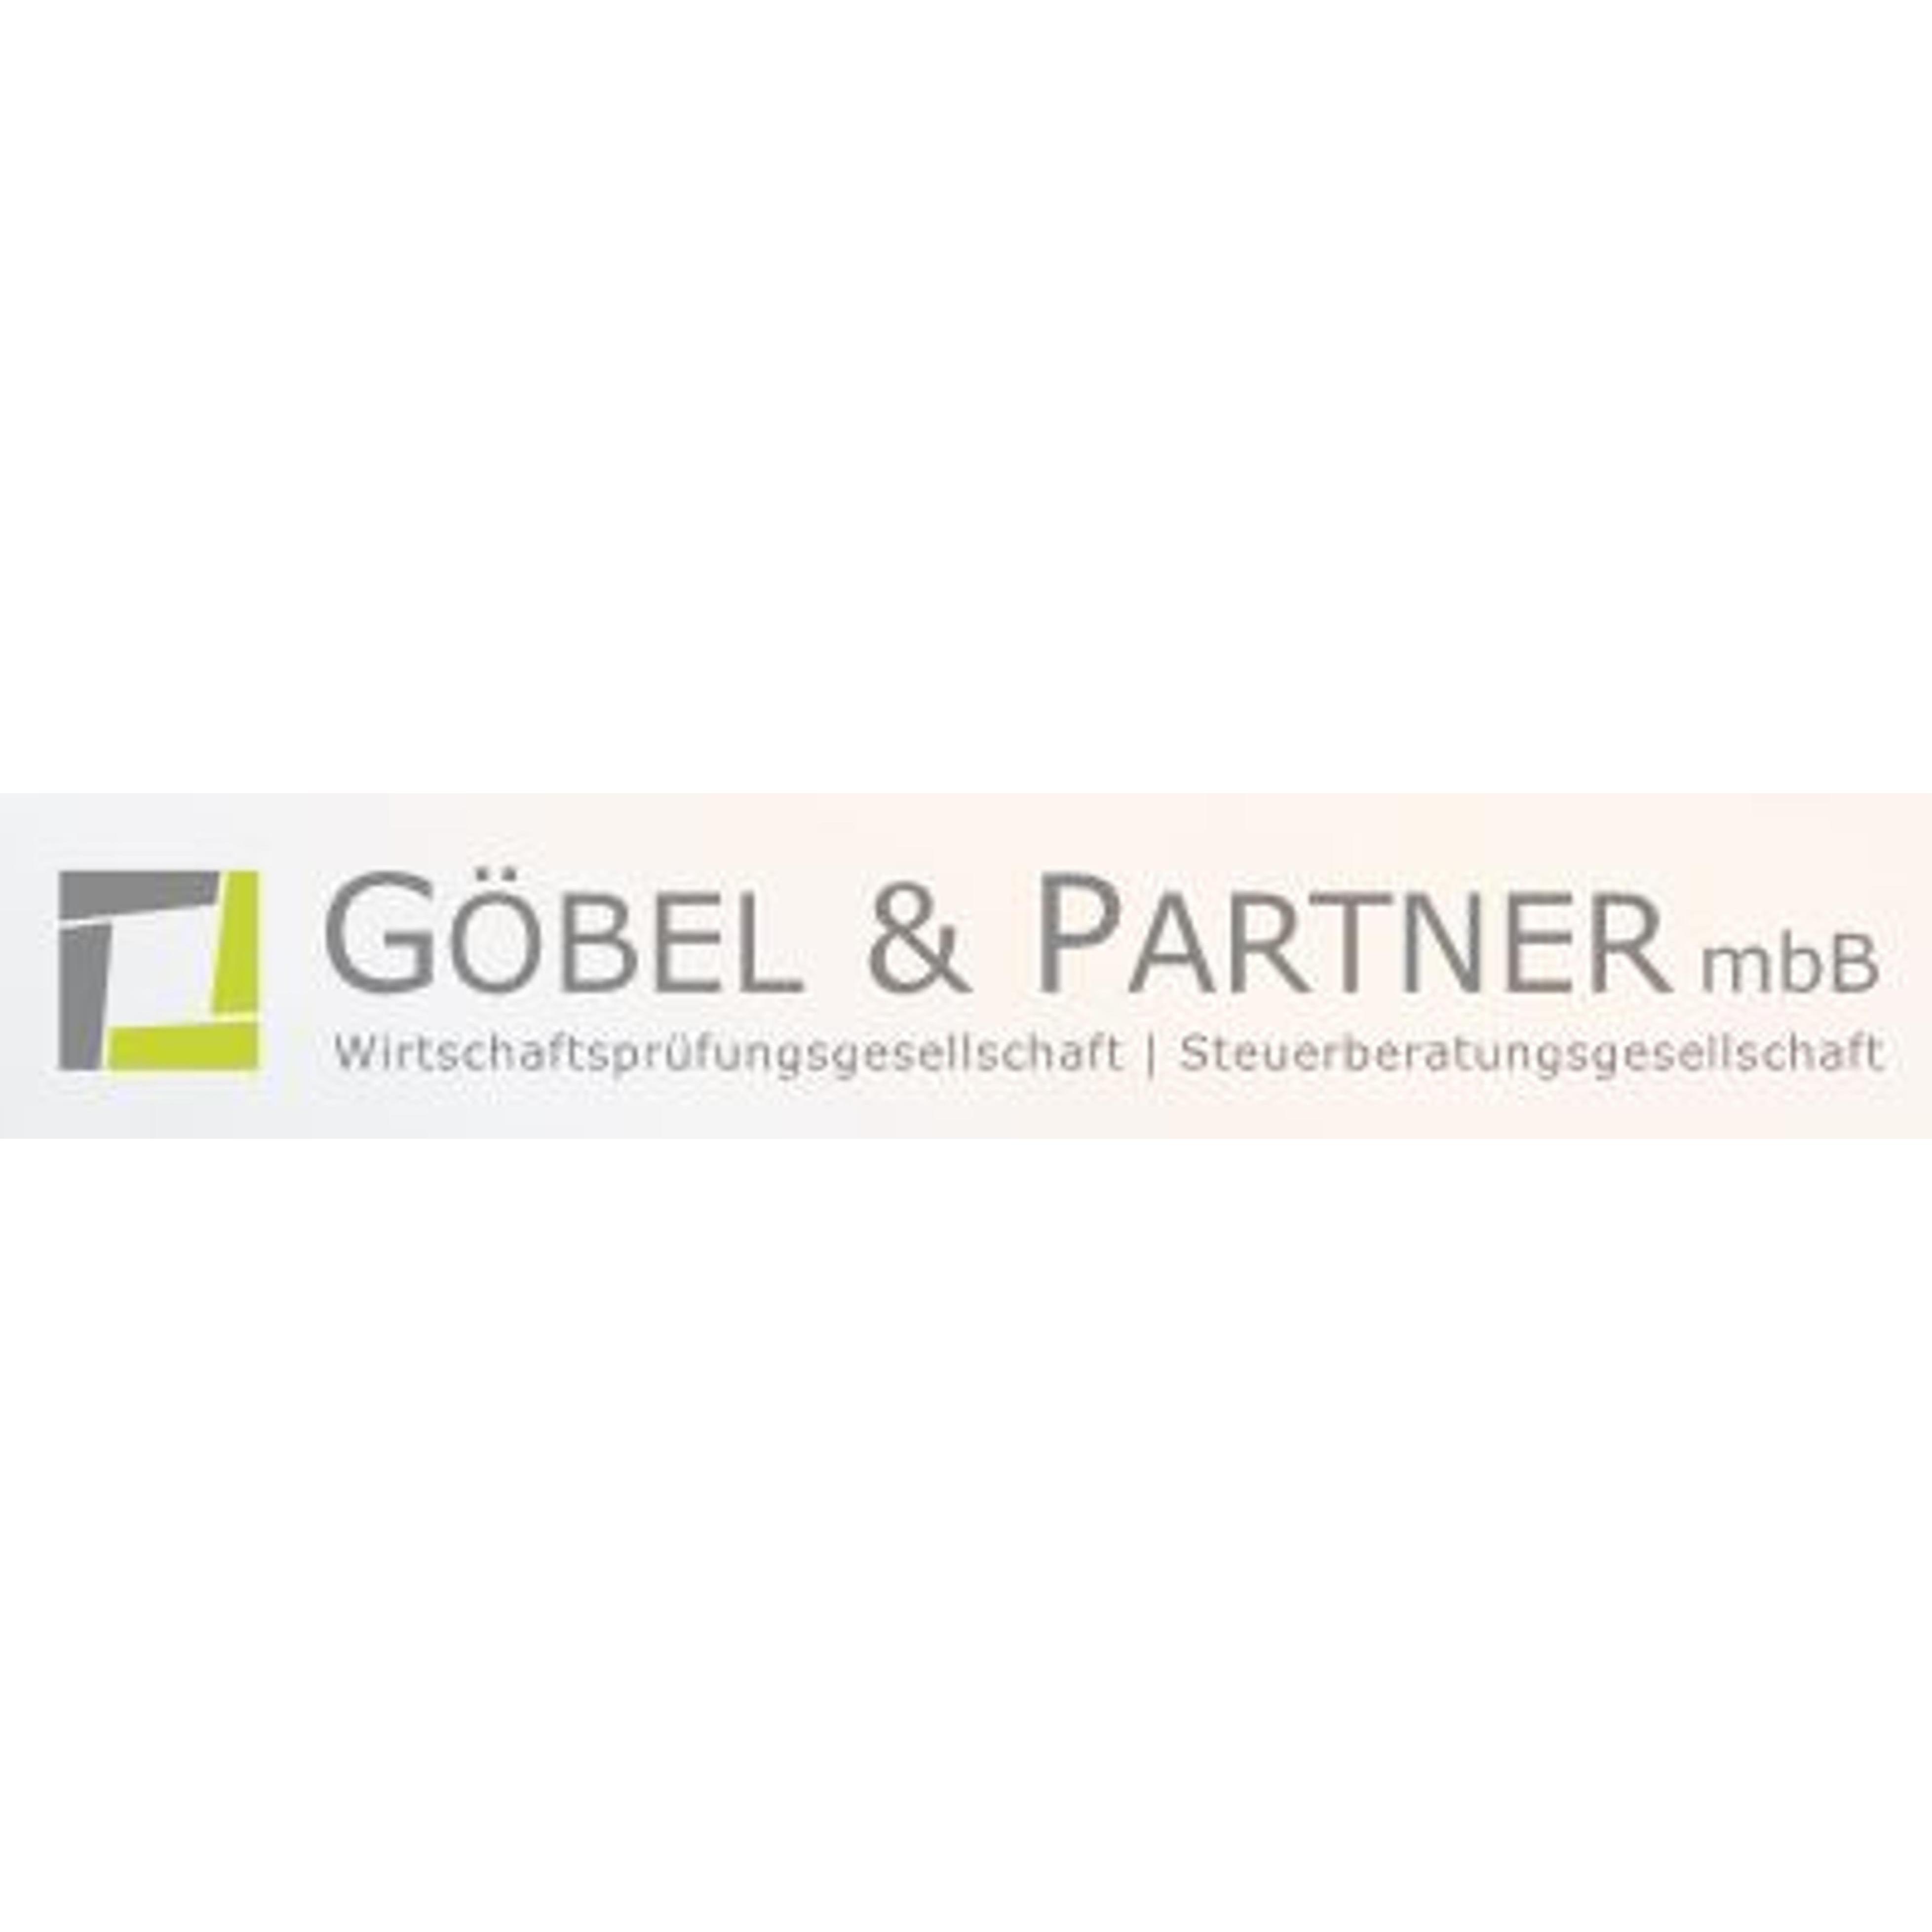 Göbel & Partner mbB Wirtschaftsprüfungsgesellschaft | Steuerberatungsgesellschaft